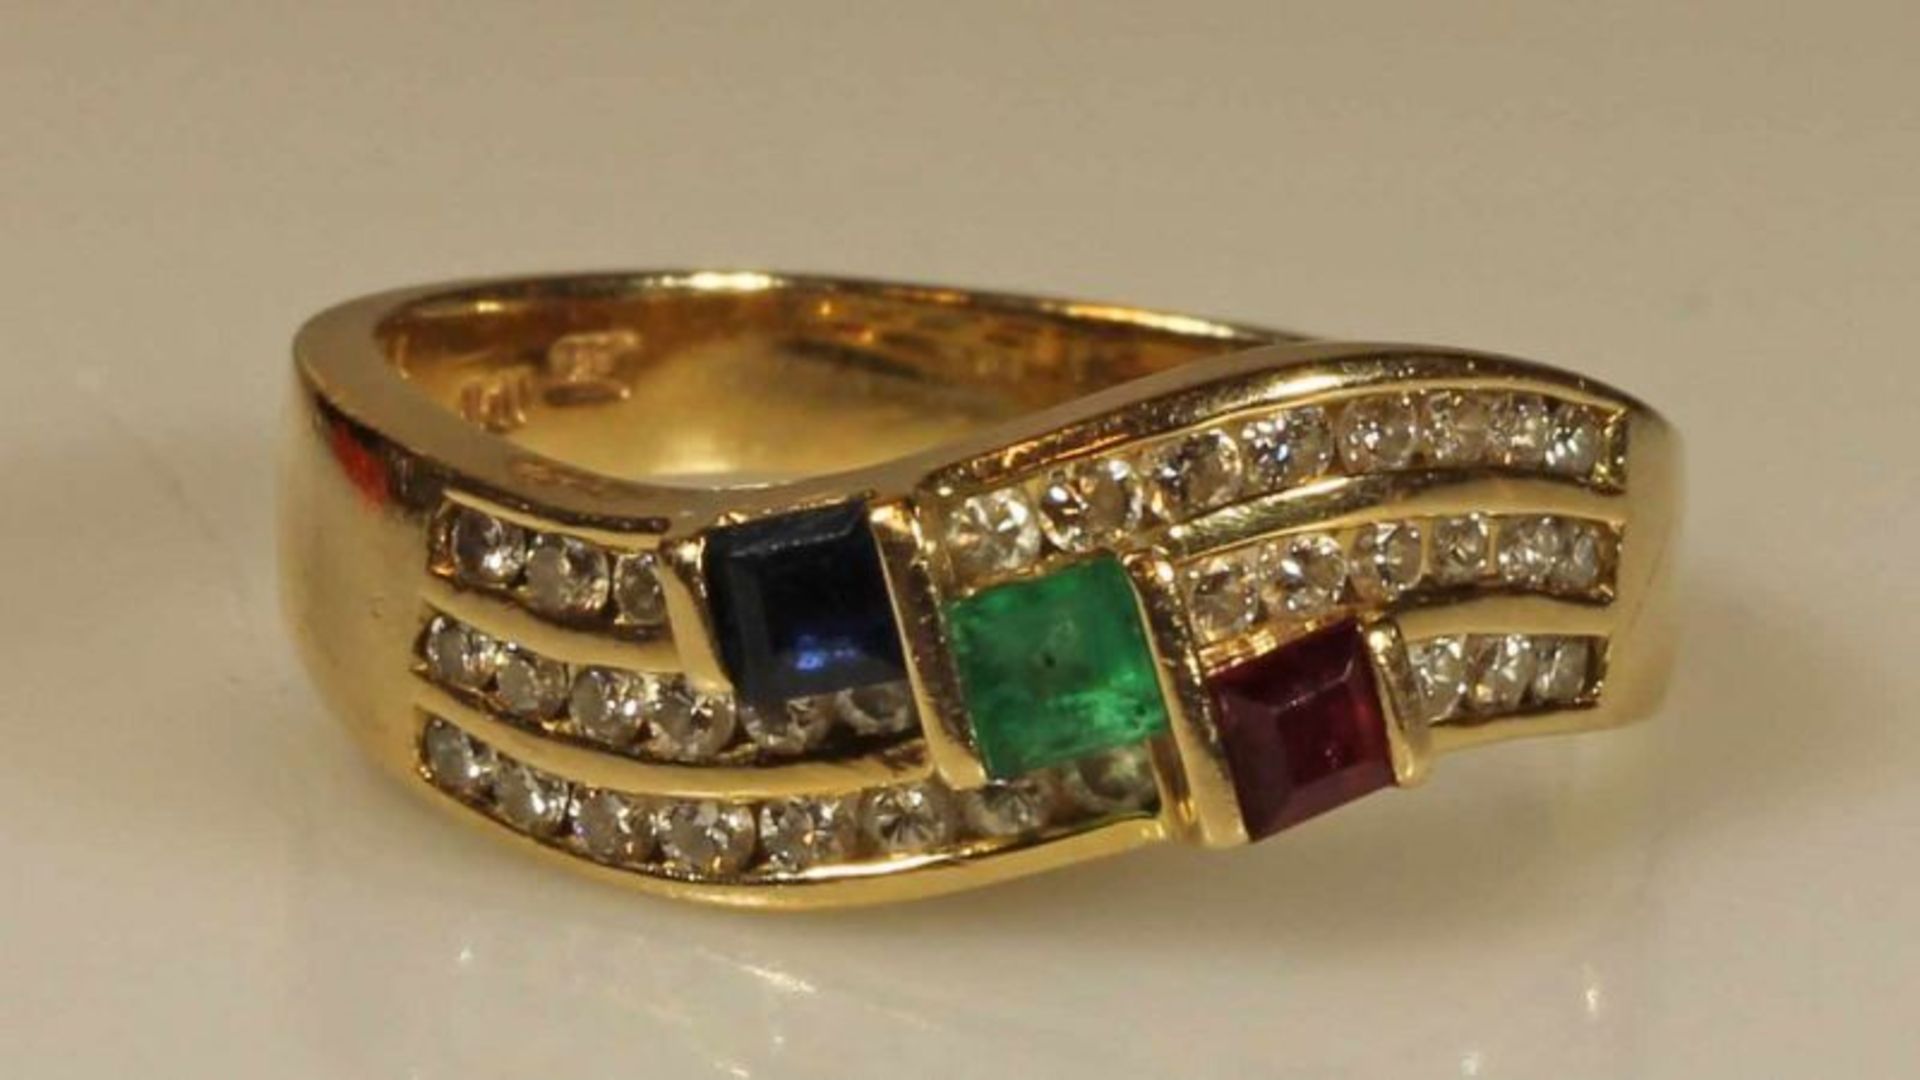 Ring, GG 585, 1 Smaragd, 1 Saphir, 1 Rubin, alle quadratisch facettiert, 34 Besatz-Brillanten, 4